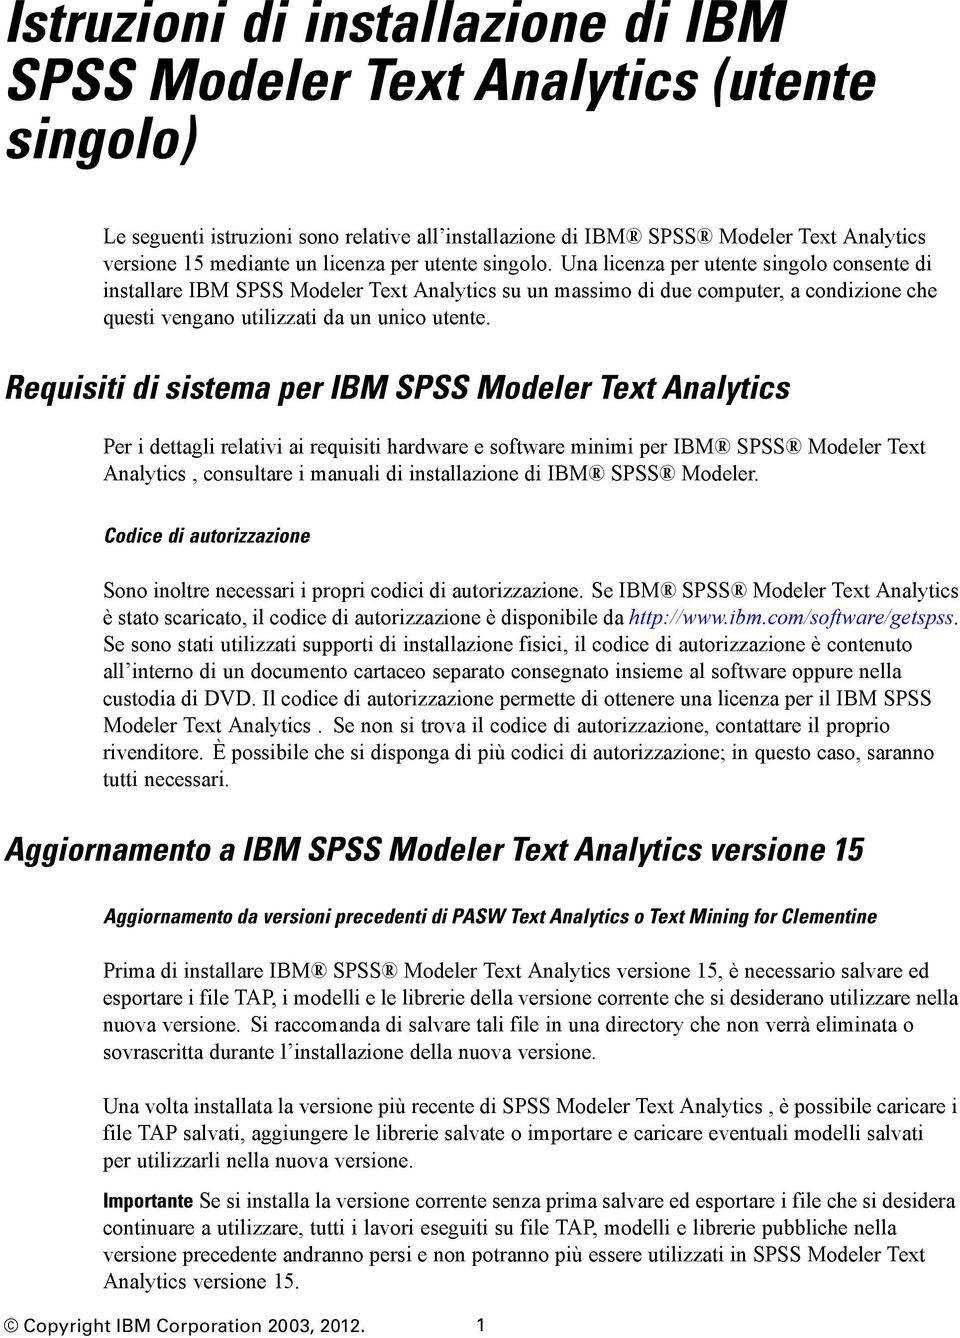 Una licenza per utente singolo consente di installare IBM SPSS Modeler Text Analytics su un massimo di due computer, a condizione che questi vengano utilizzati da un unico utente.